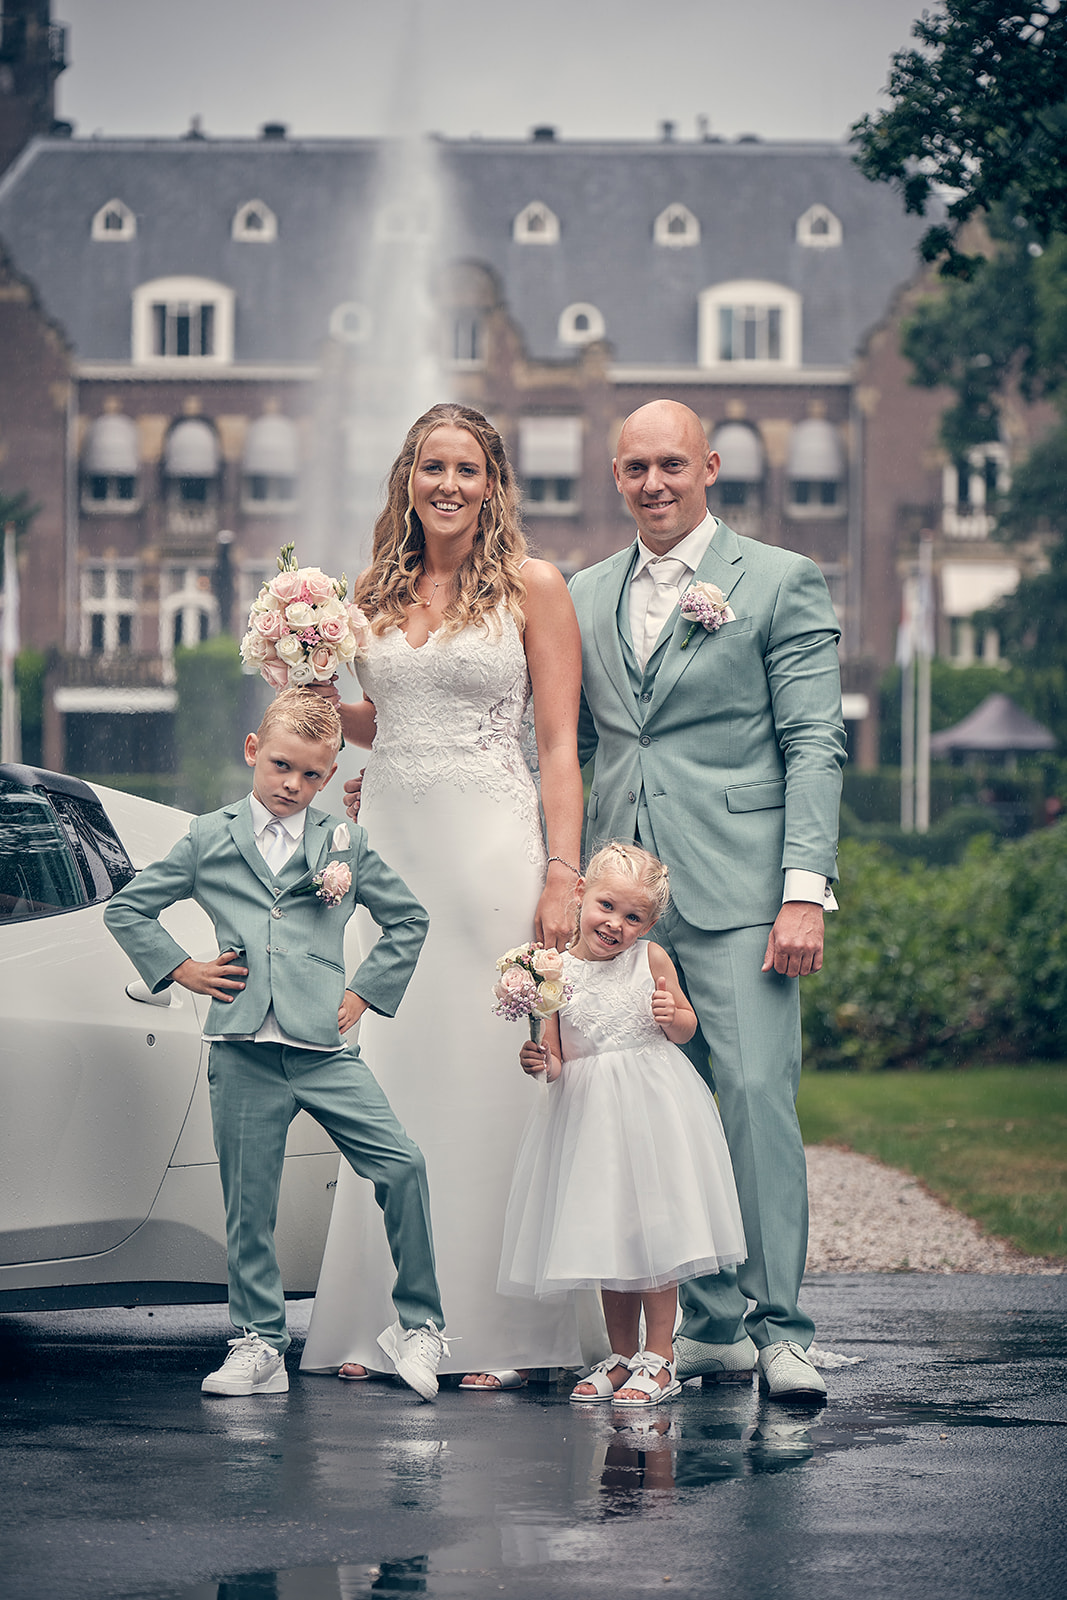 Trouwfotograaf Kasteel Hooge Vuursche in Baarn - De bruidsfotografie van Dennis en Kim - fotoshoot